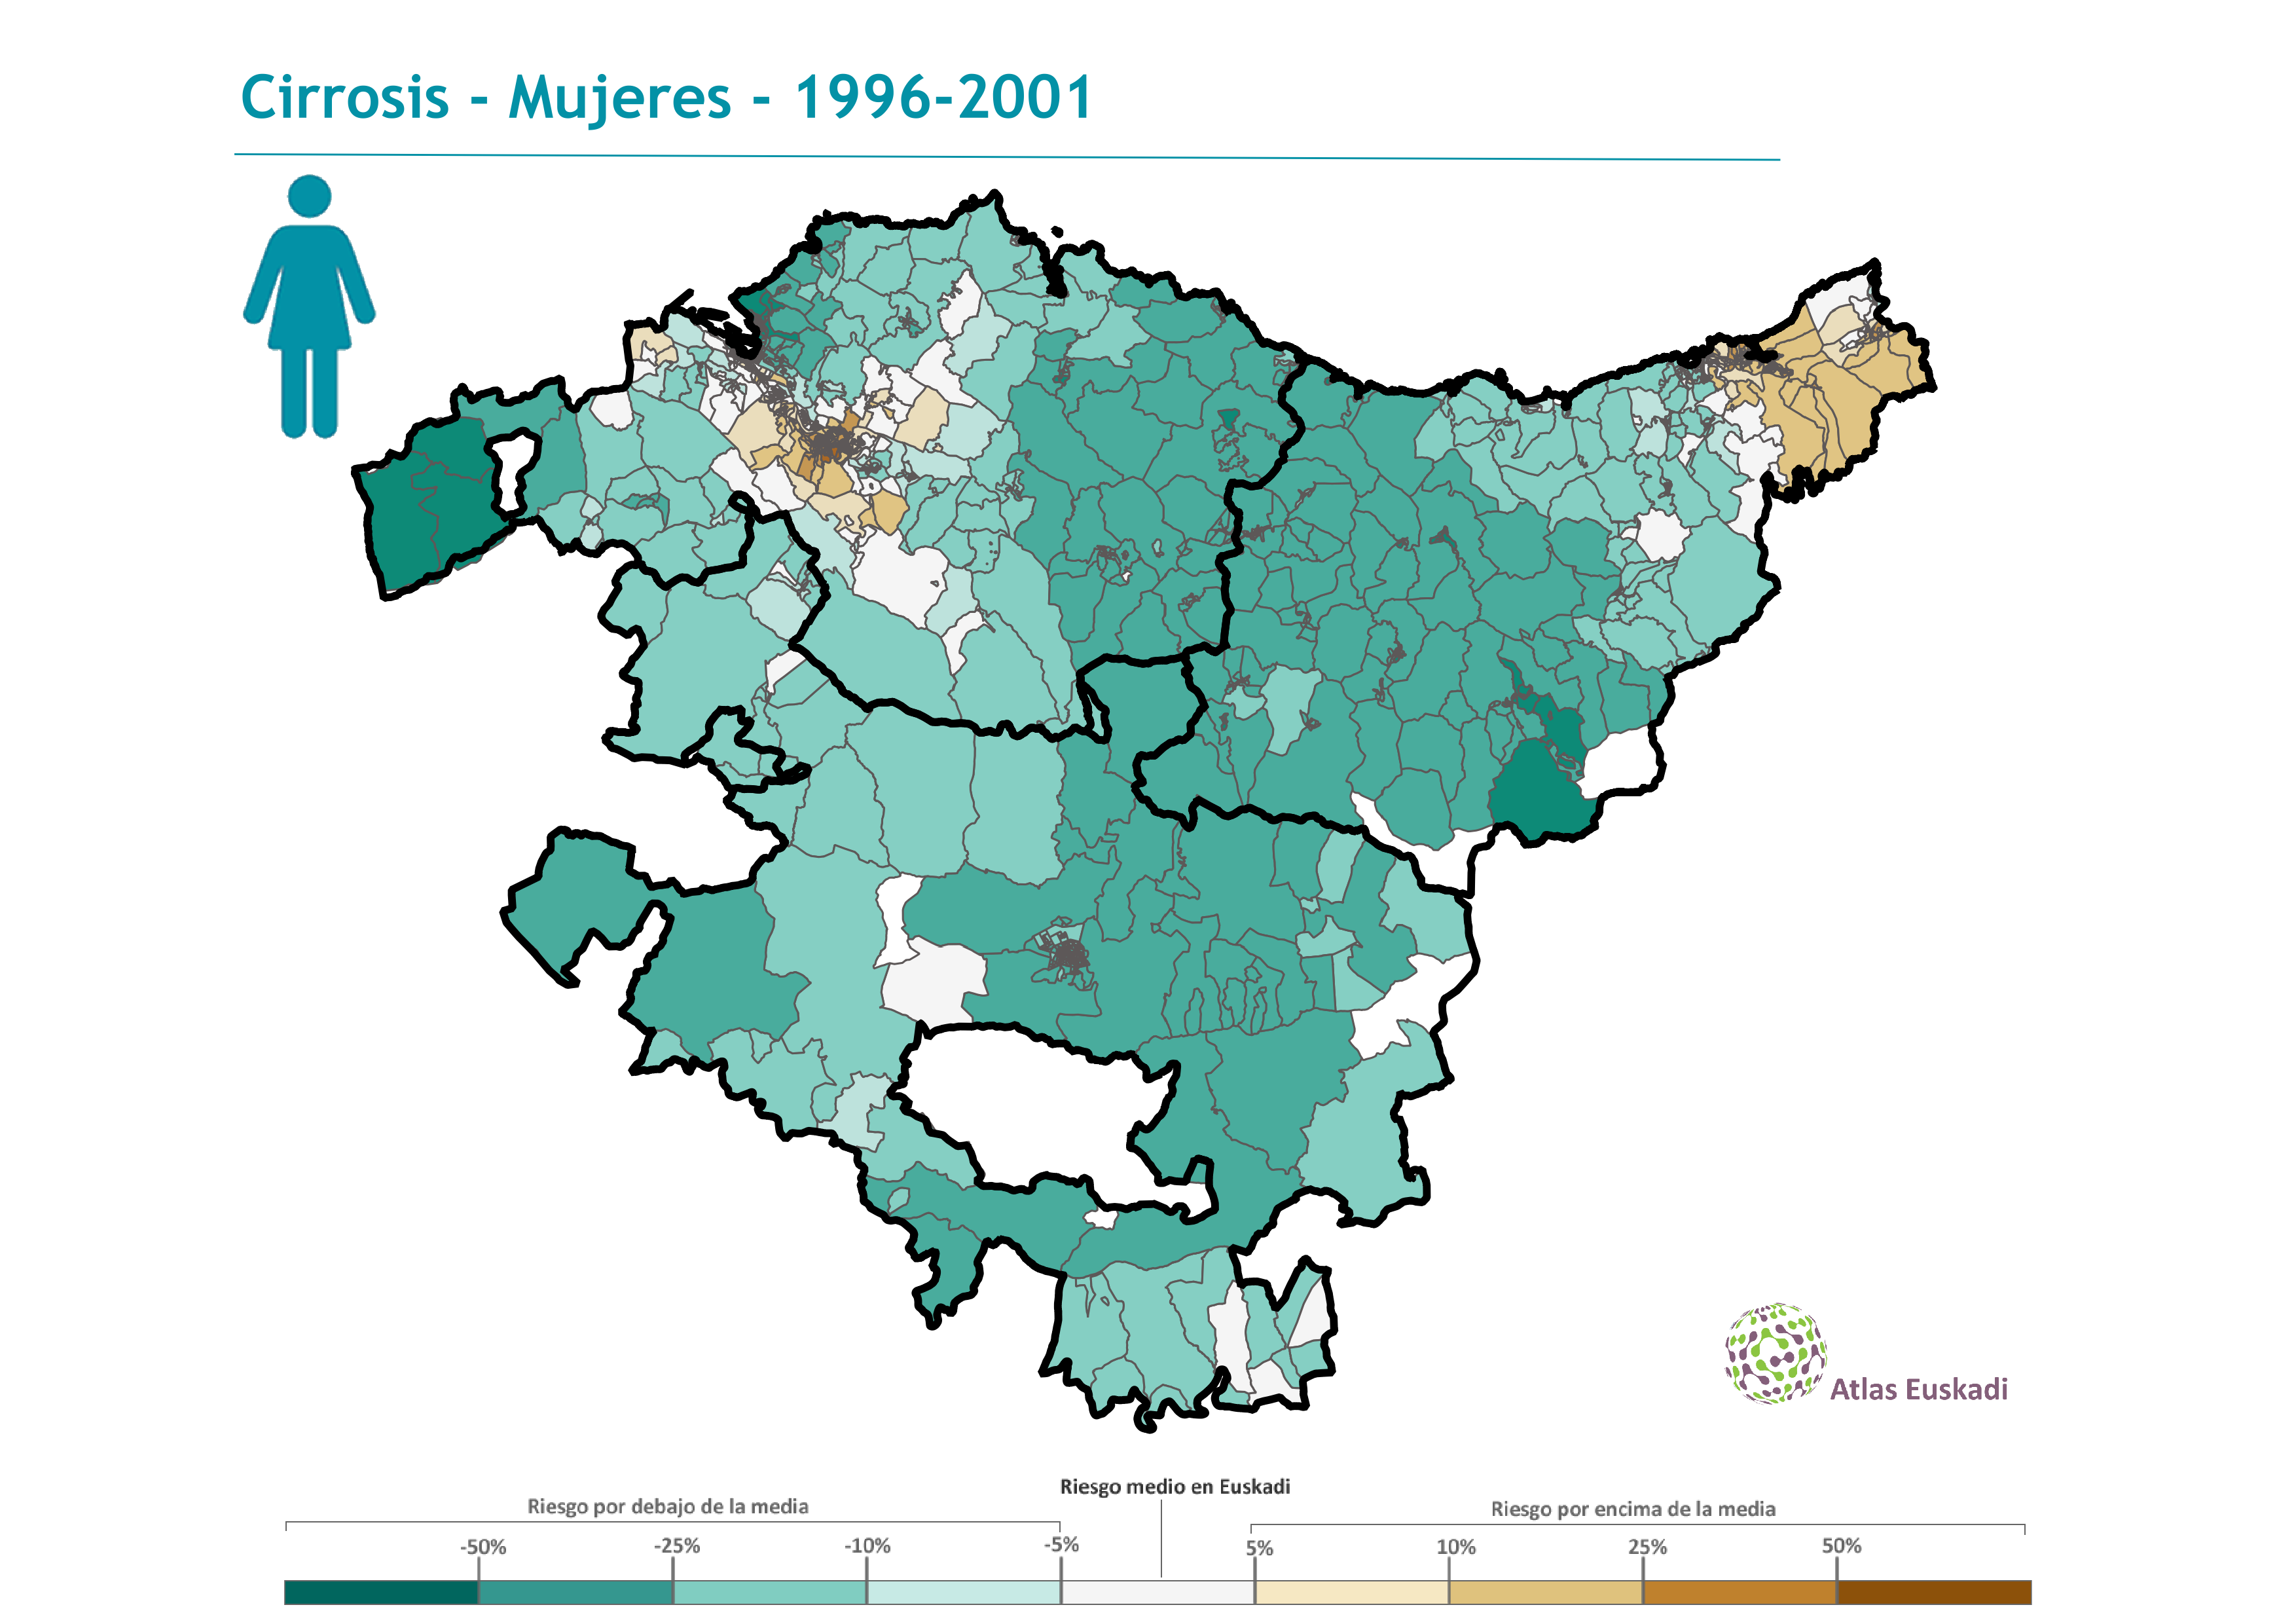 Cirrosis mujeres  1996-2001 Euskadi